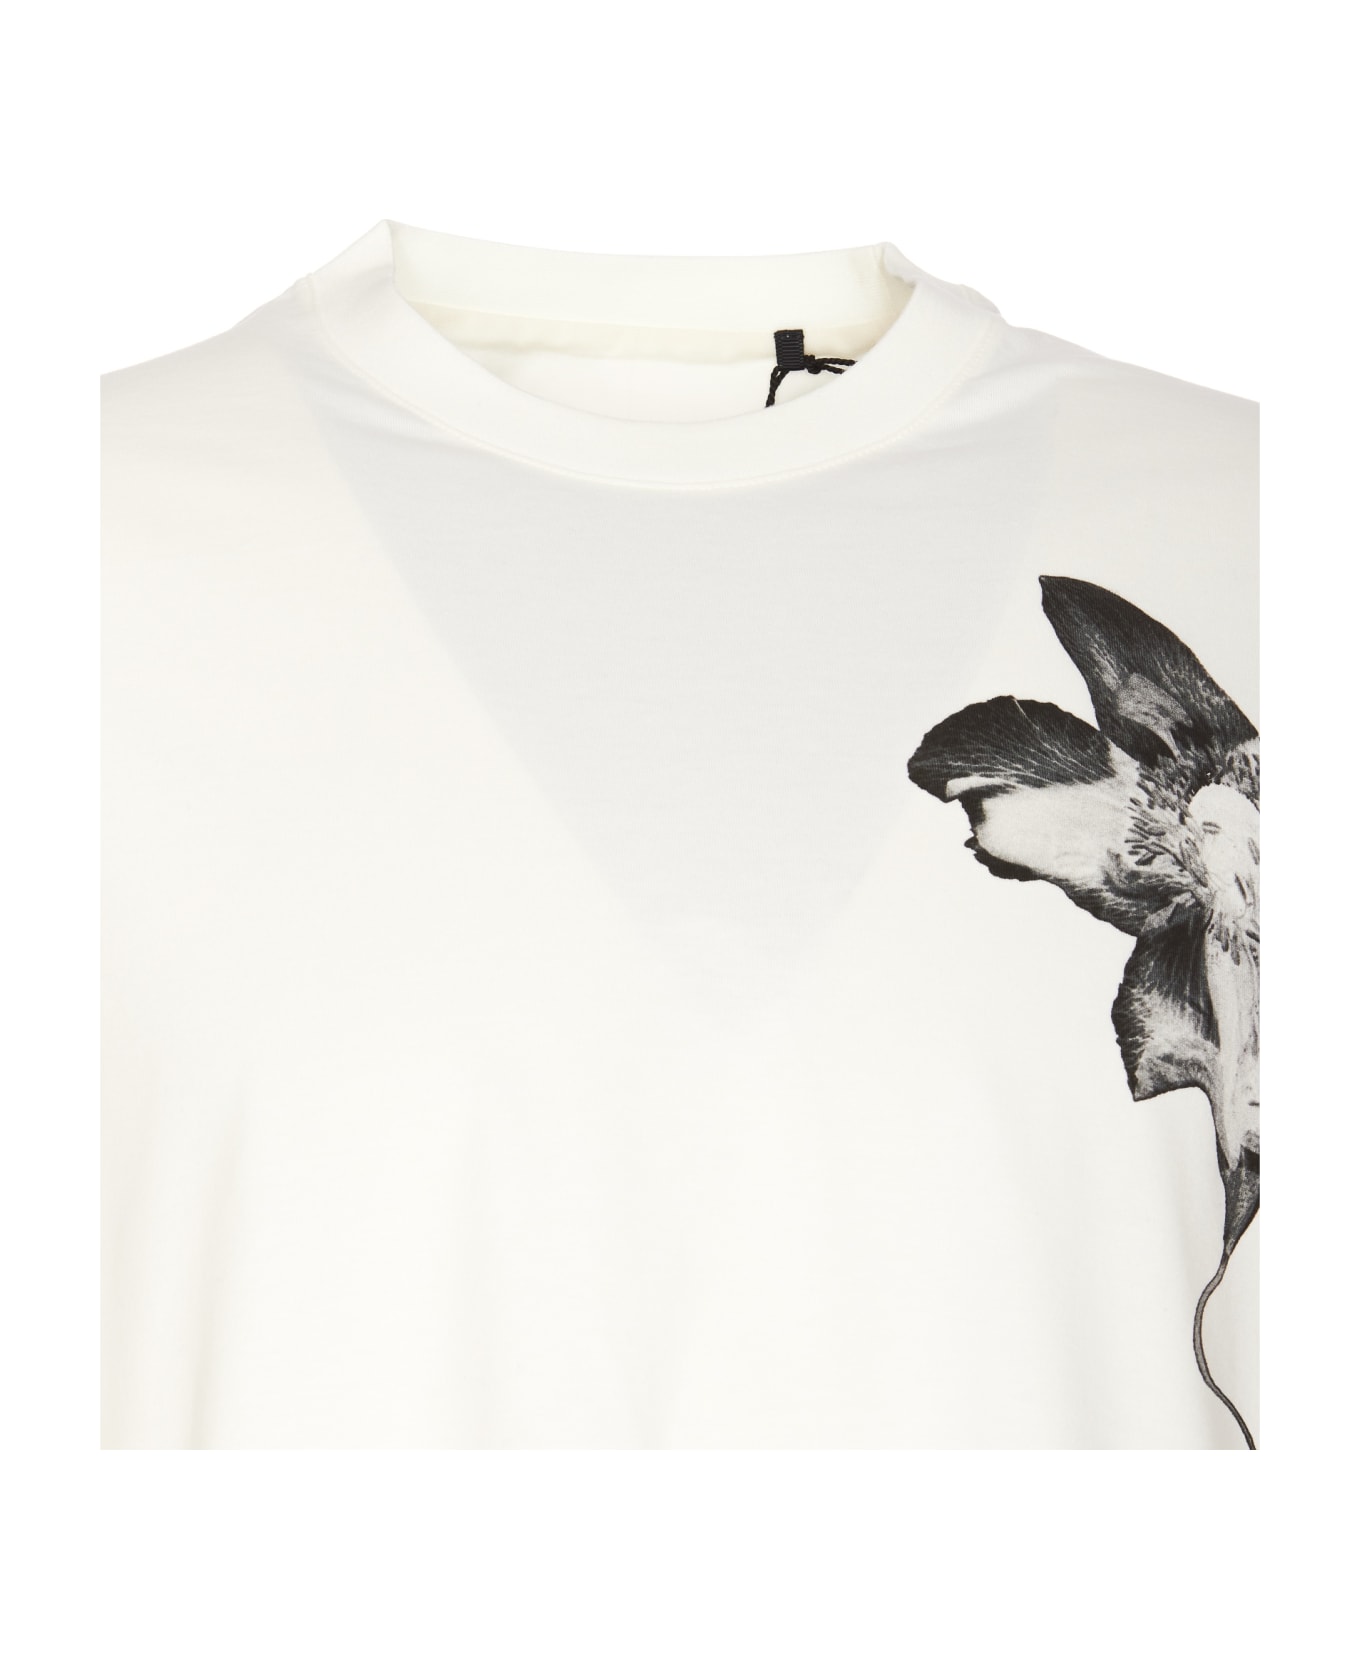 Y-3 Gfx T-shirt - WHITE シャツ